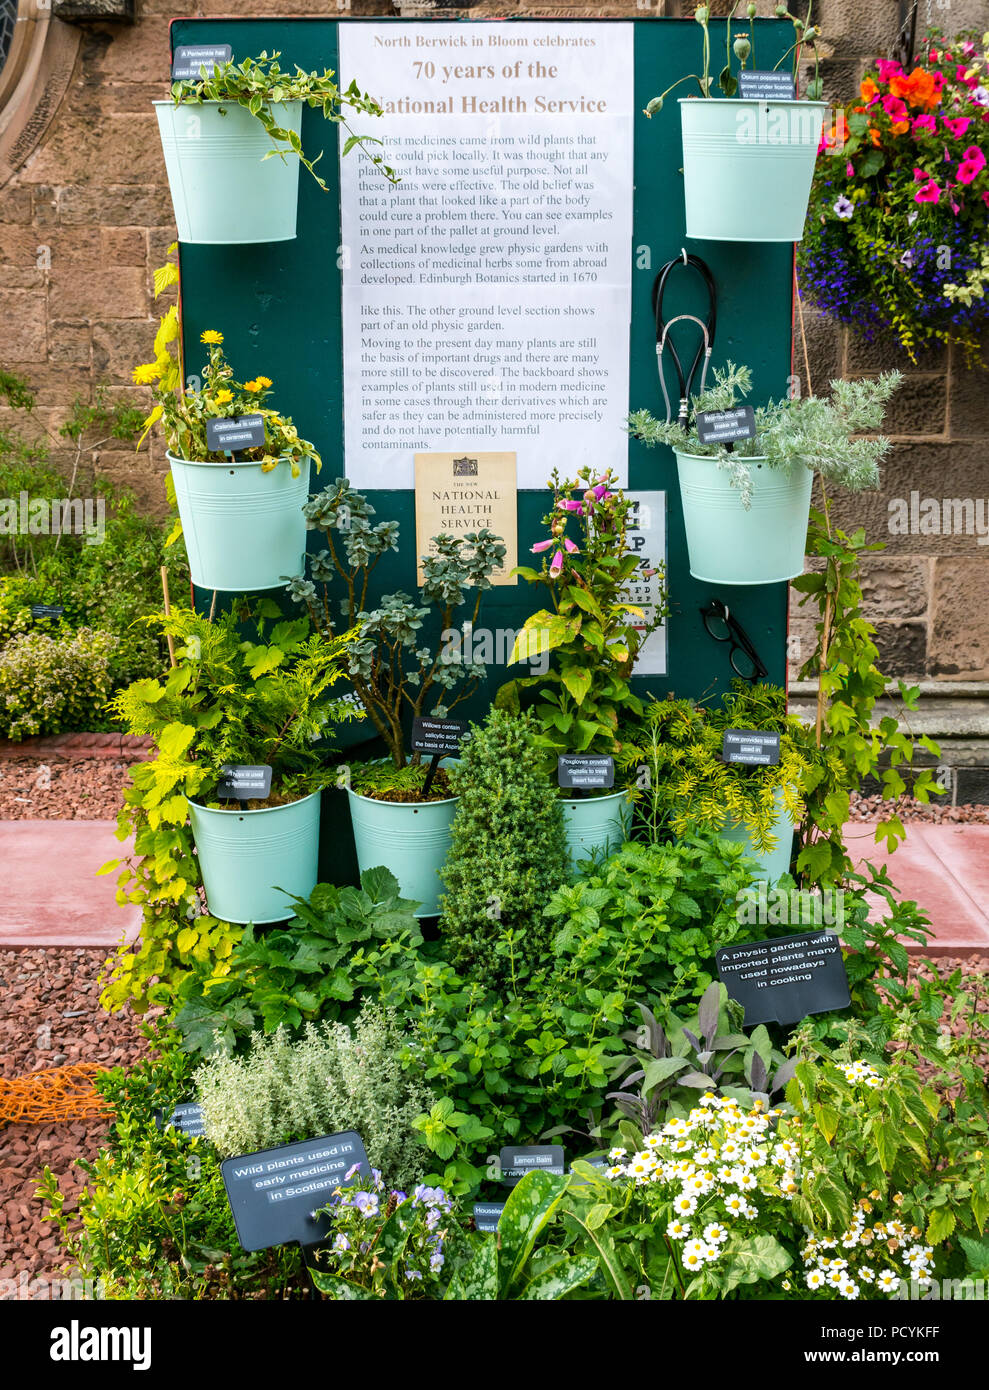 Blumenarrangement Heilpflanzen feiert 70 Jahre des National Health Service, Abteikirche, North Berwick in der Blüte, East Lothian, Schottland, Großbritannien Stockfoto